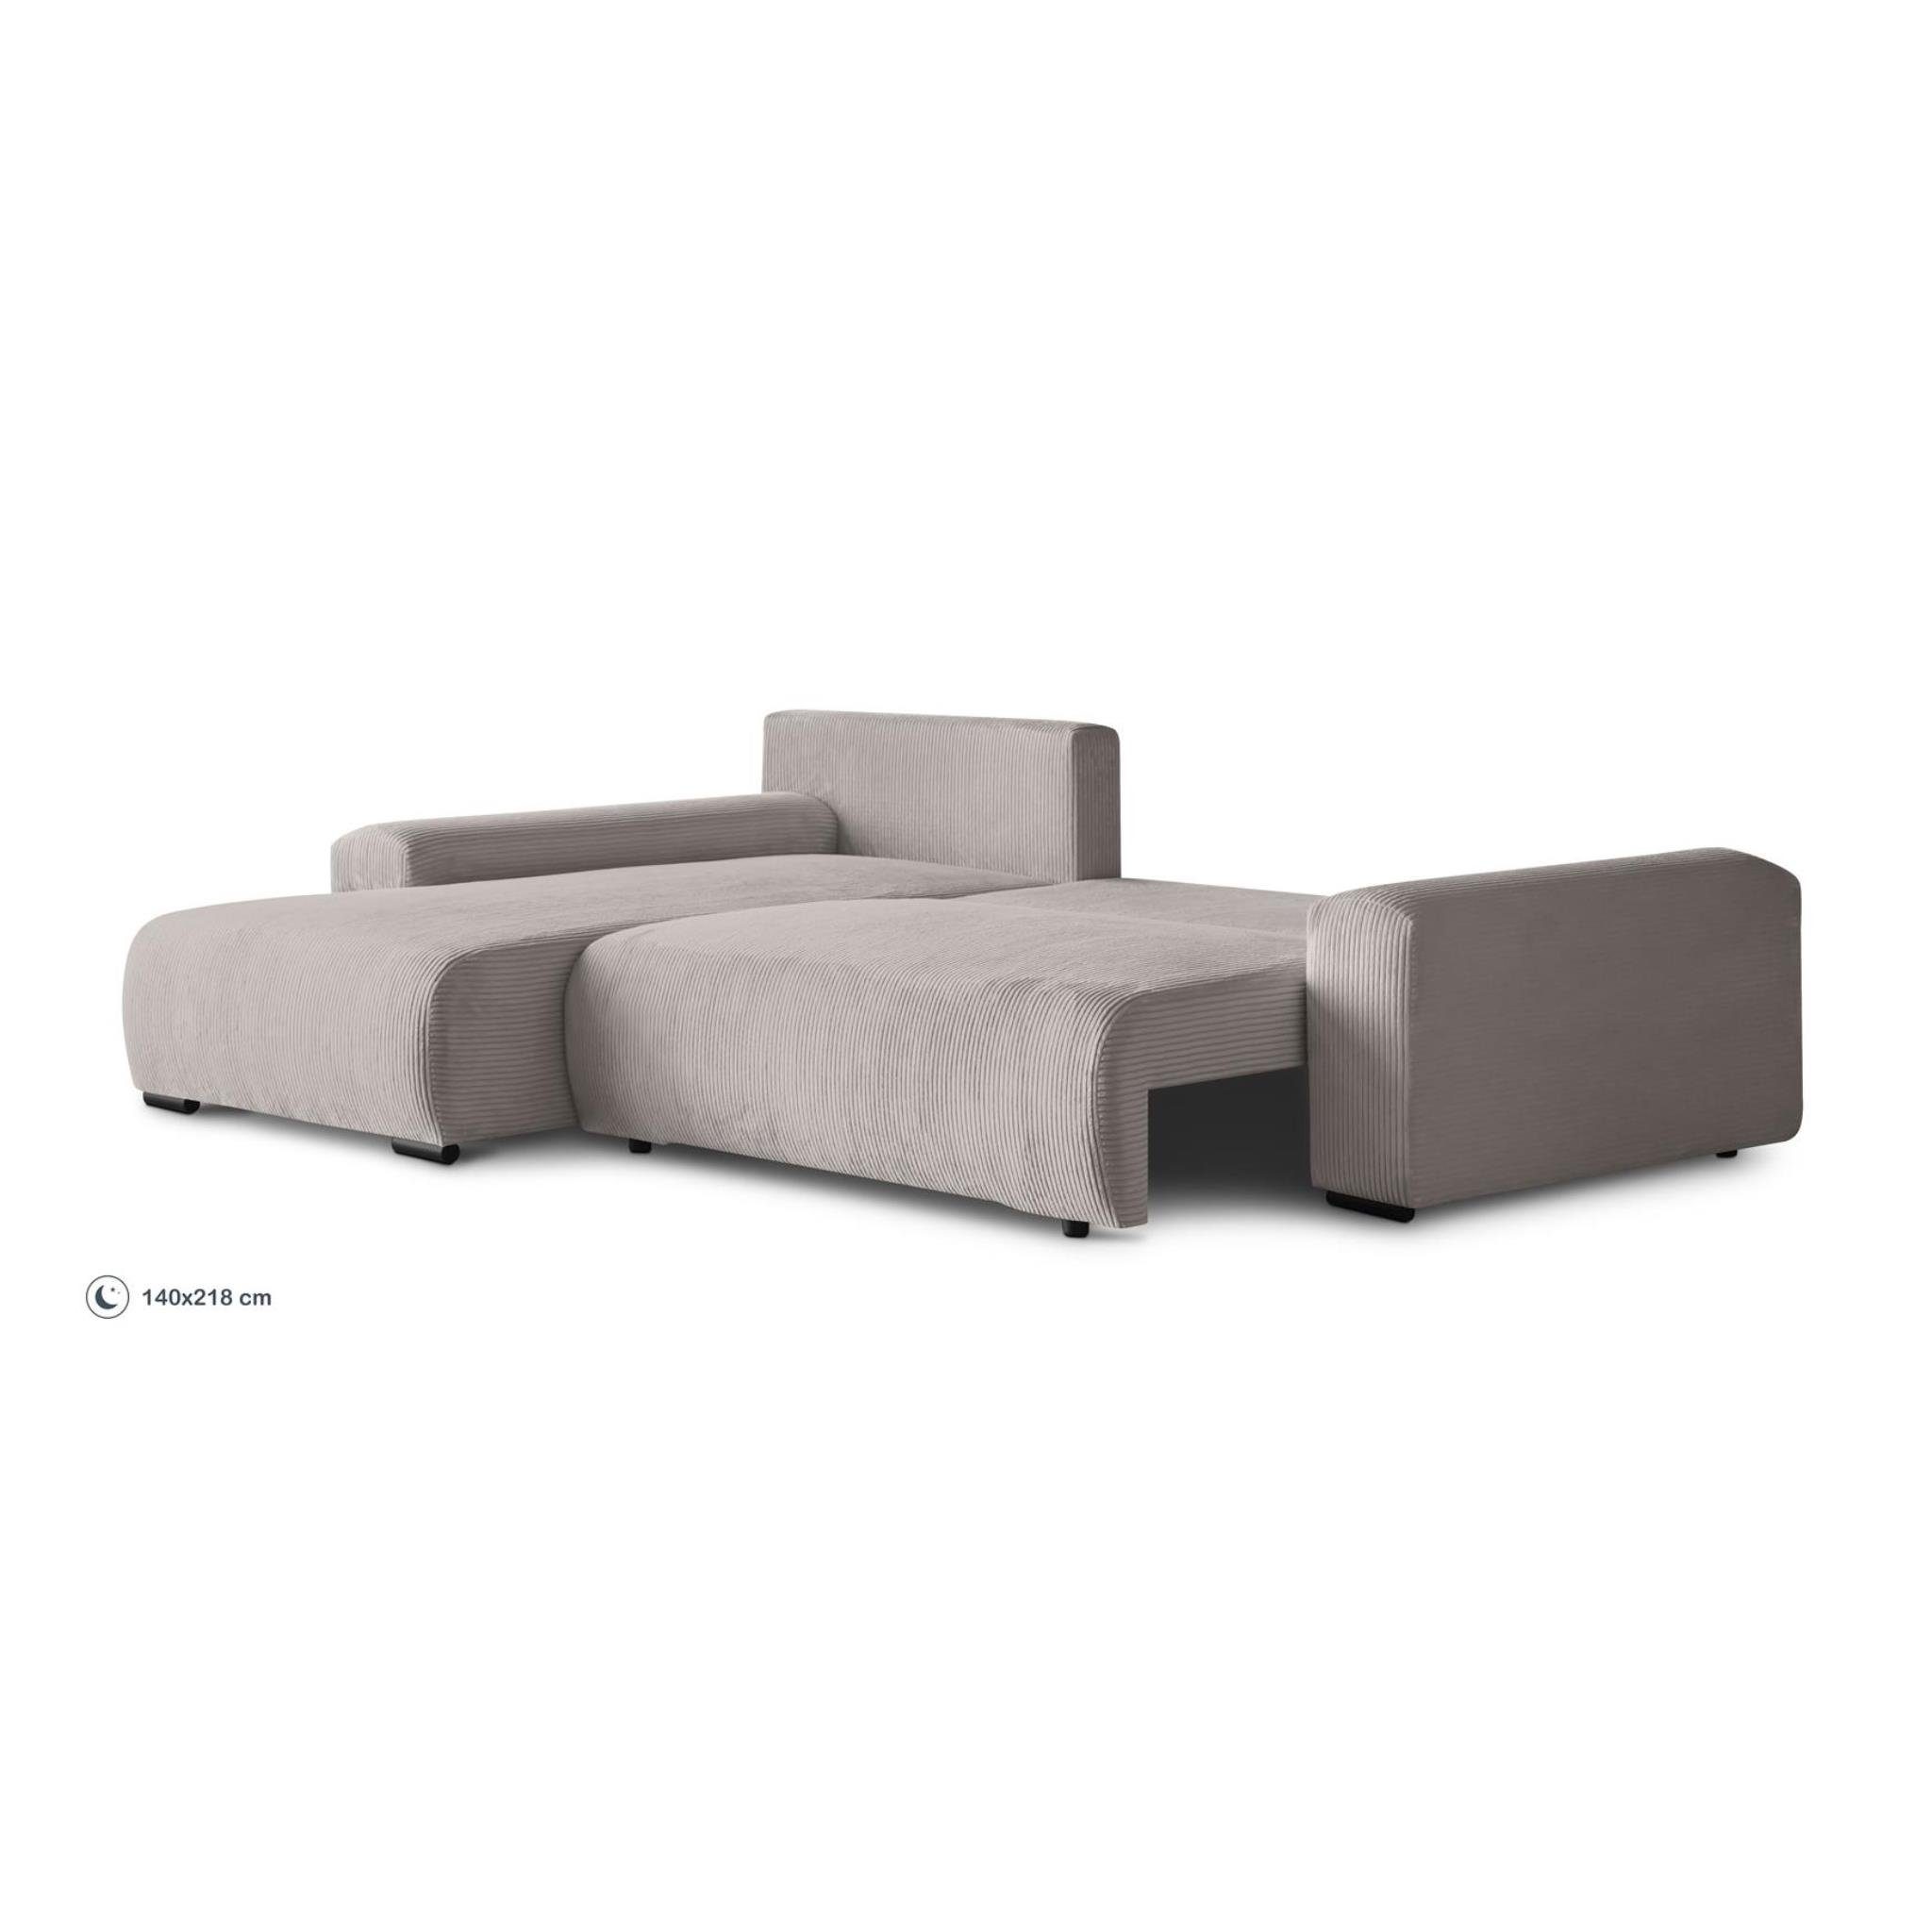 Beautysofa inkl. Corner Design, Benny, Schlaffunktion, aus Ecksofa Cordstoff stilvoll Sofa im Polsterecke modernes L-förmiges Wellenfedern, Bettkasten,